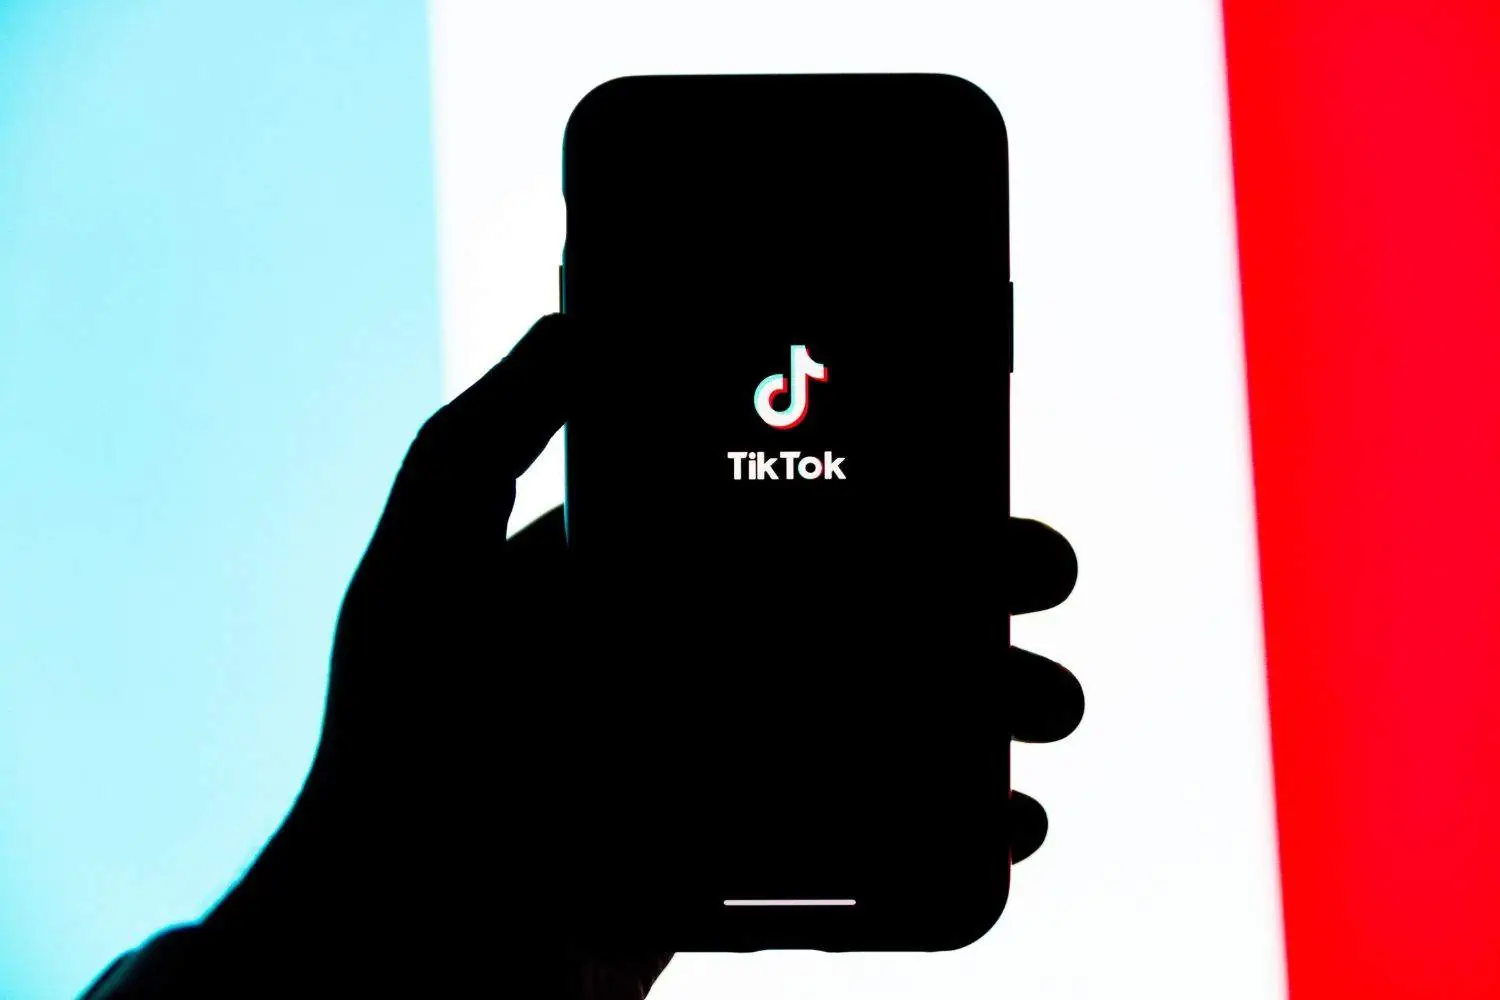 Tinder Swindler inspiring the inner con artist in these TikTok users